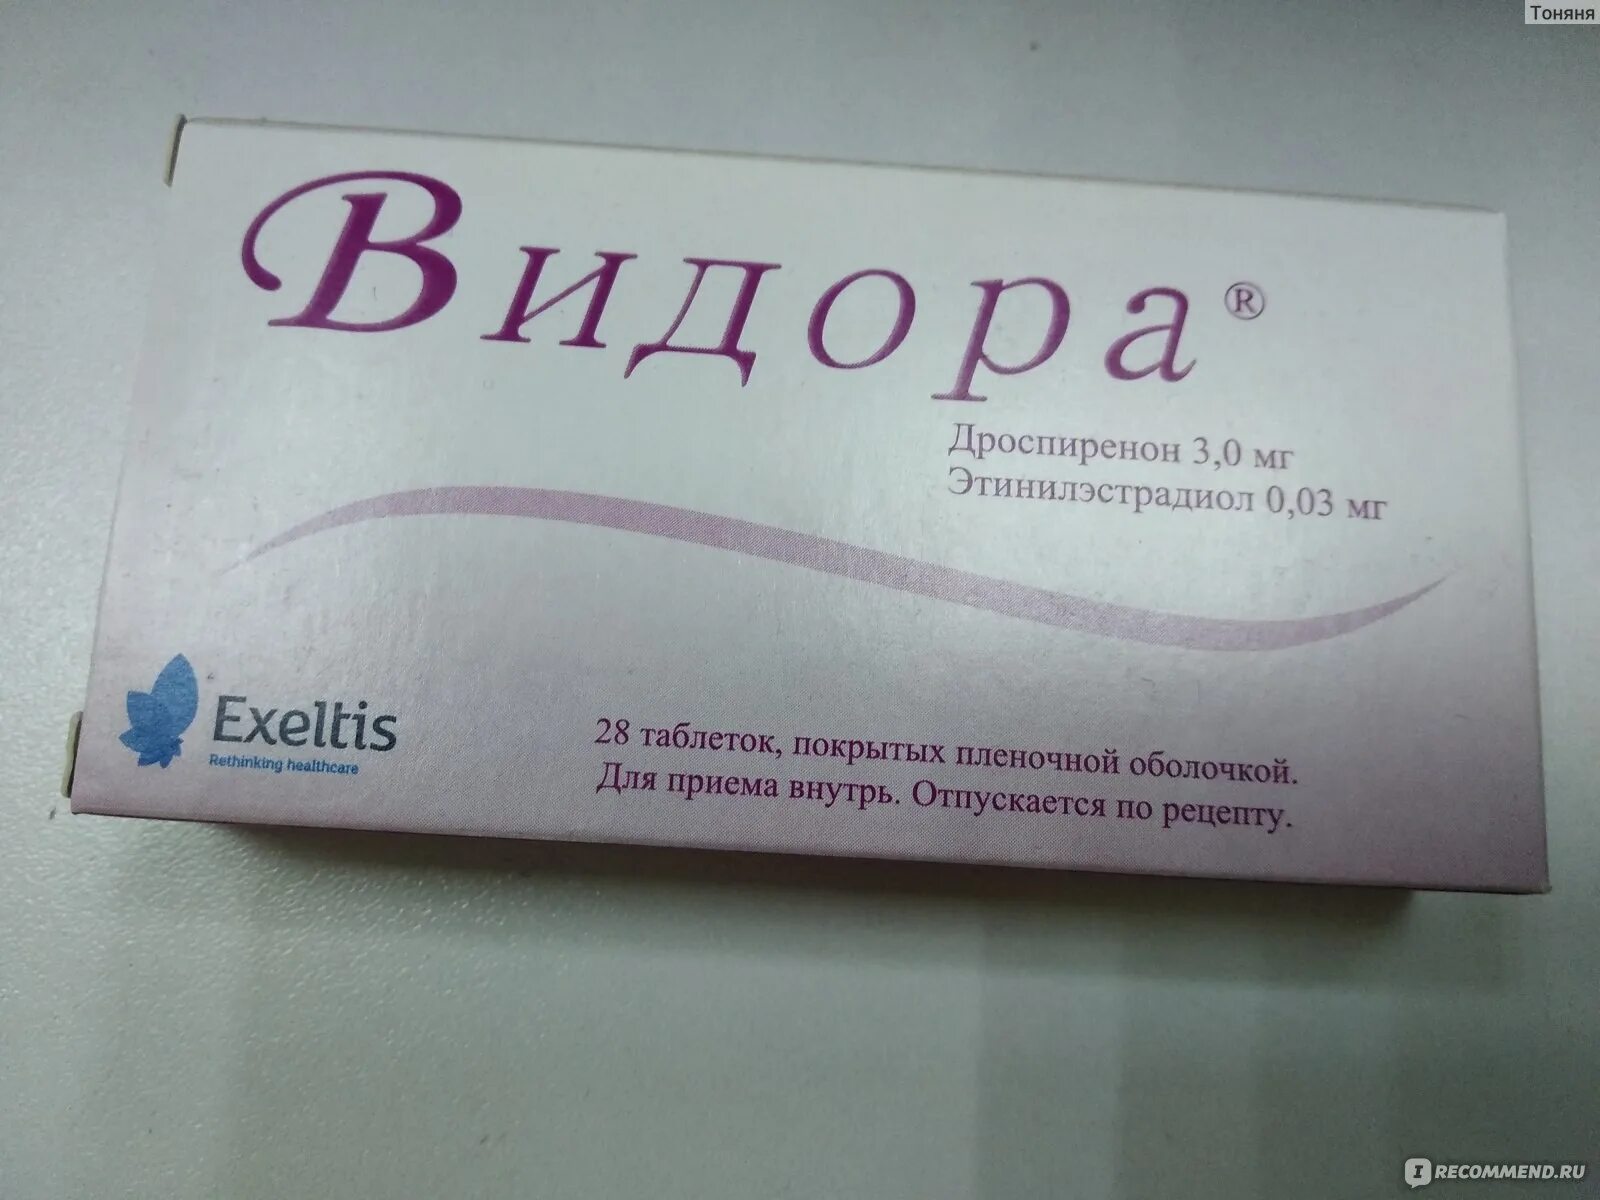 Видора купить. Противозачаточные Видора. Видора противозачаточный препарат. Таблетки контрацептивы Видора 21+7. Видора таблетки, покрытые пленочной оболочкой.